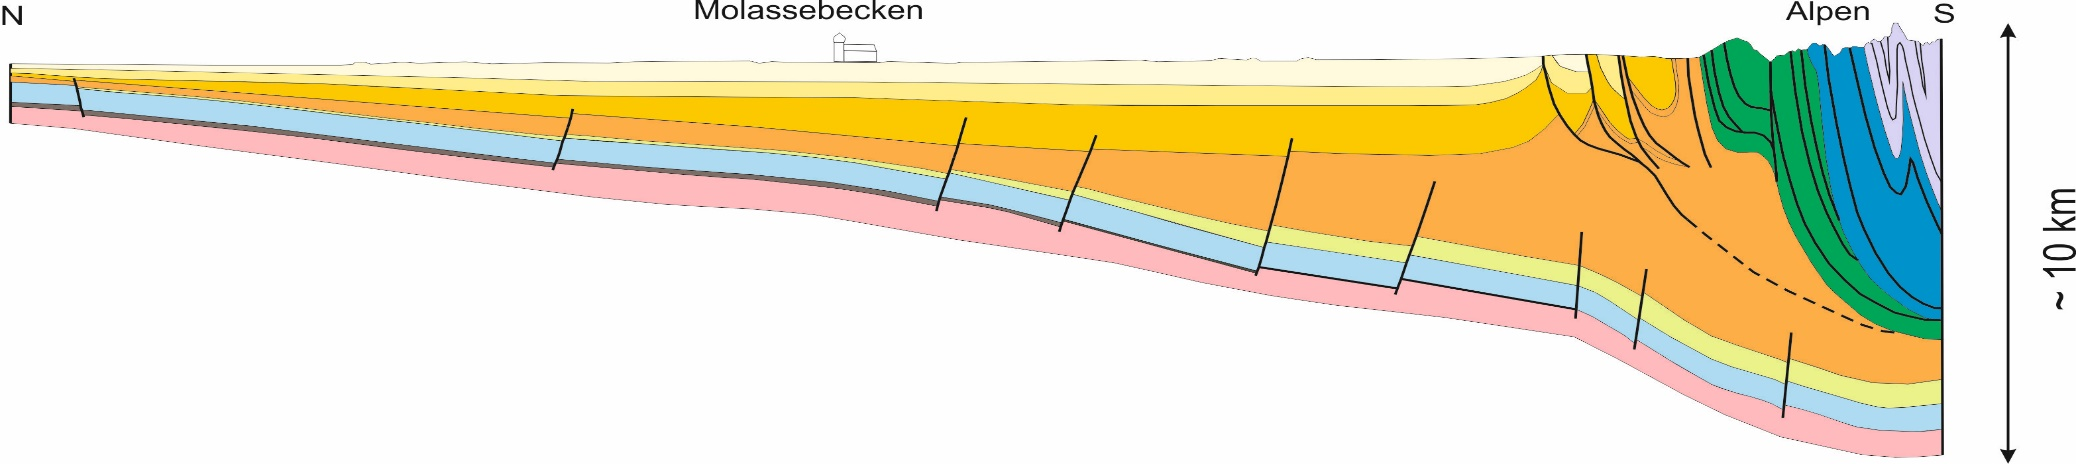 Bassin munichois : ressource Sud de l Allemagne zone la plus importante pour l exploita on de l'énergie géothermique en Allemagne Réservoir du Malm de +